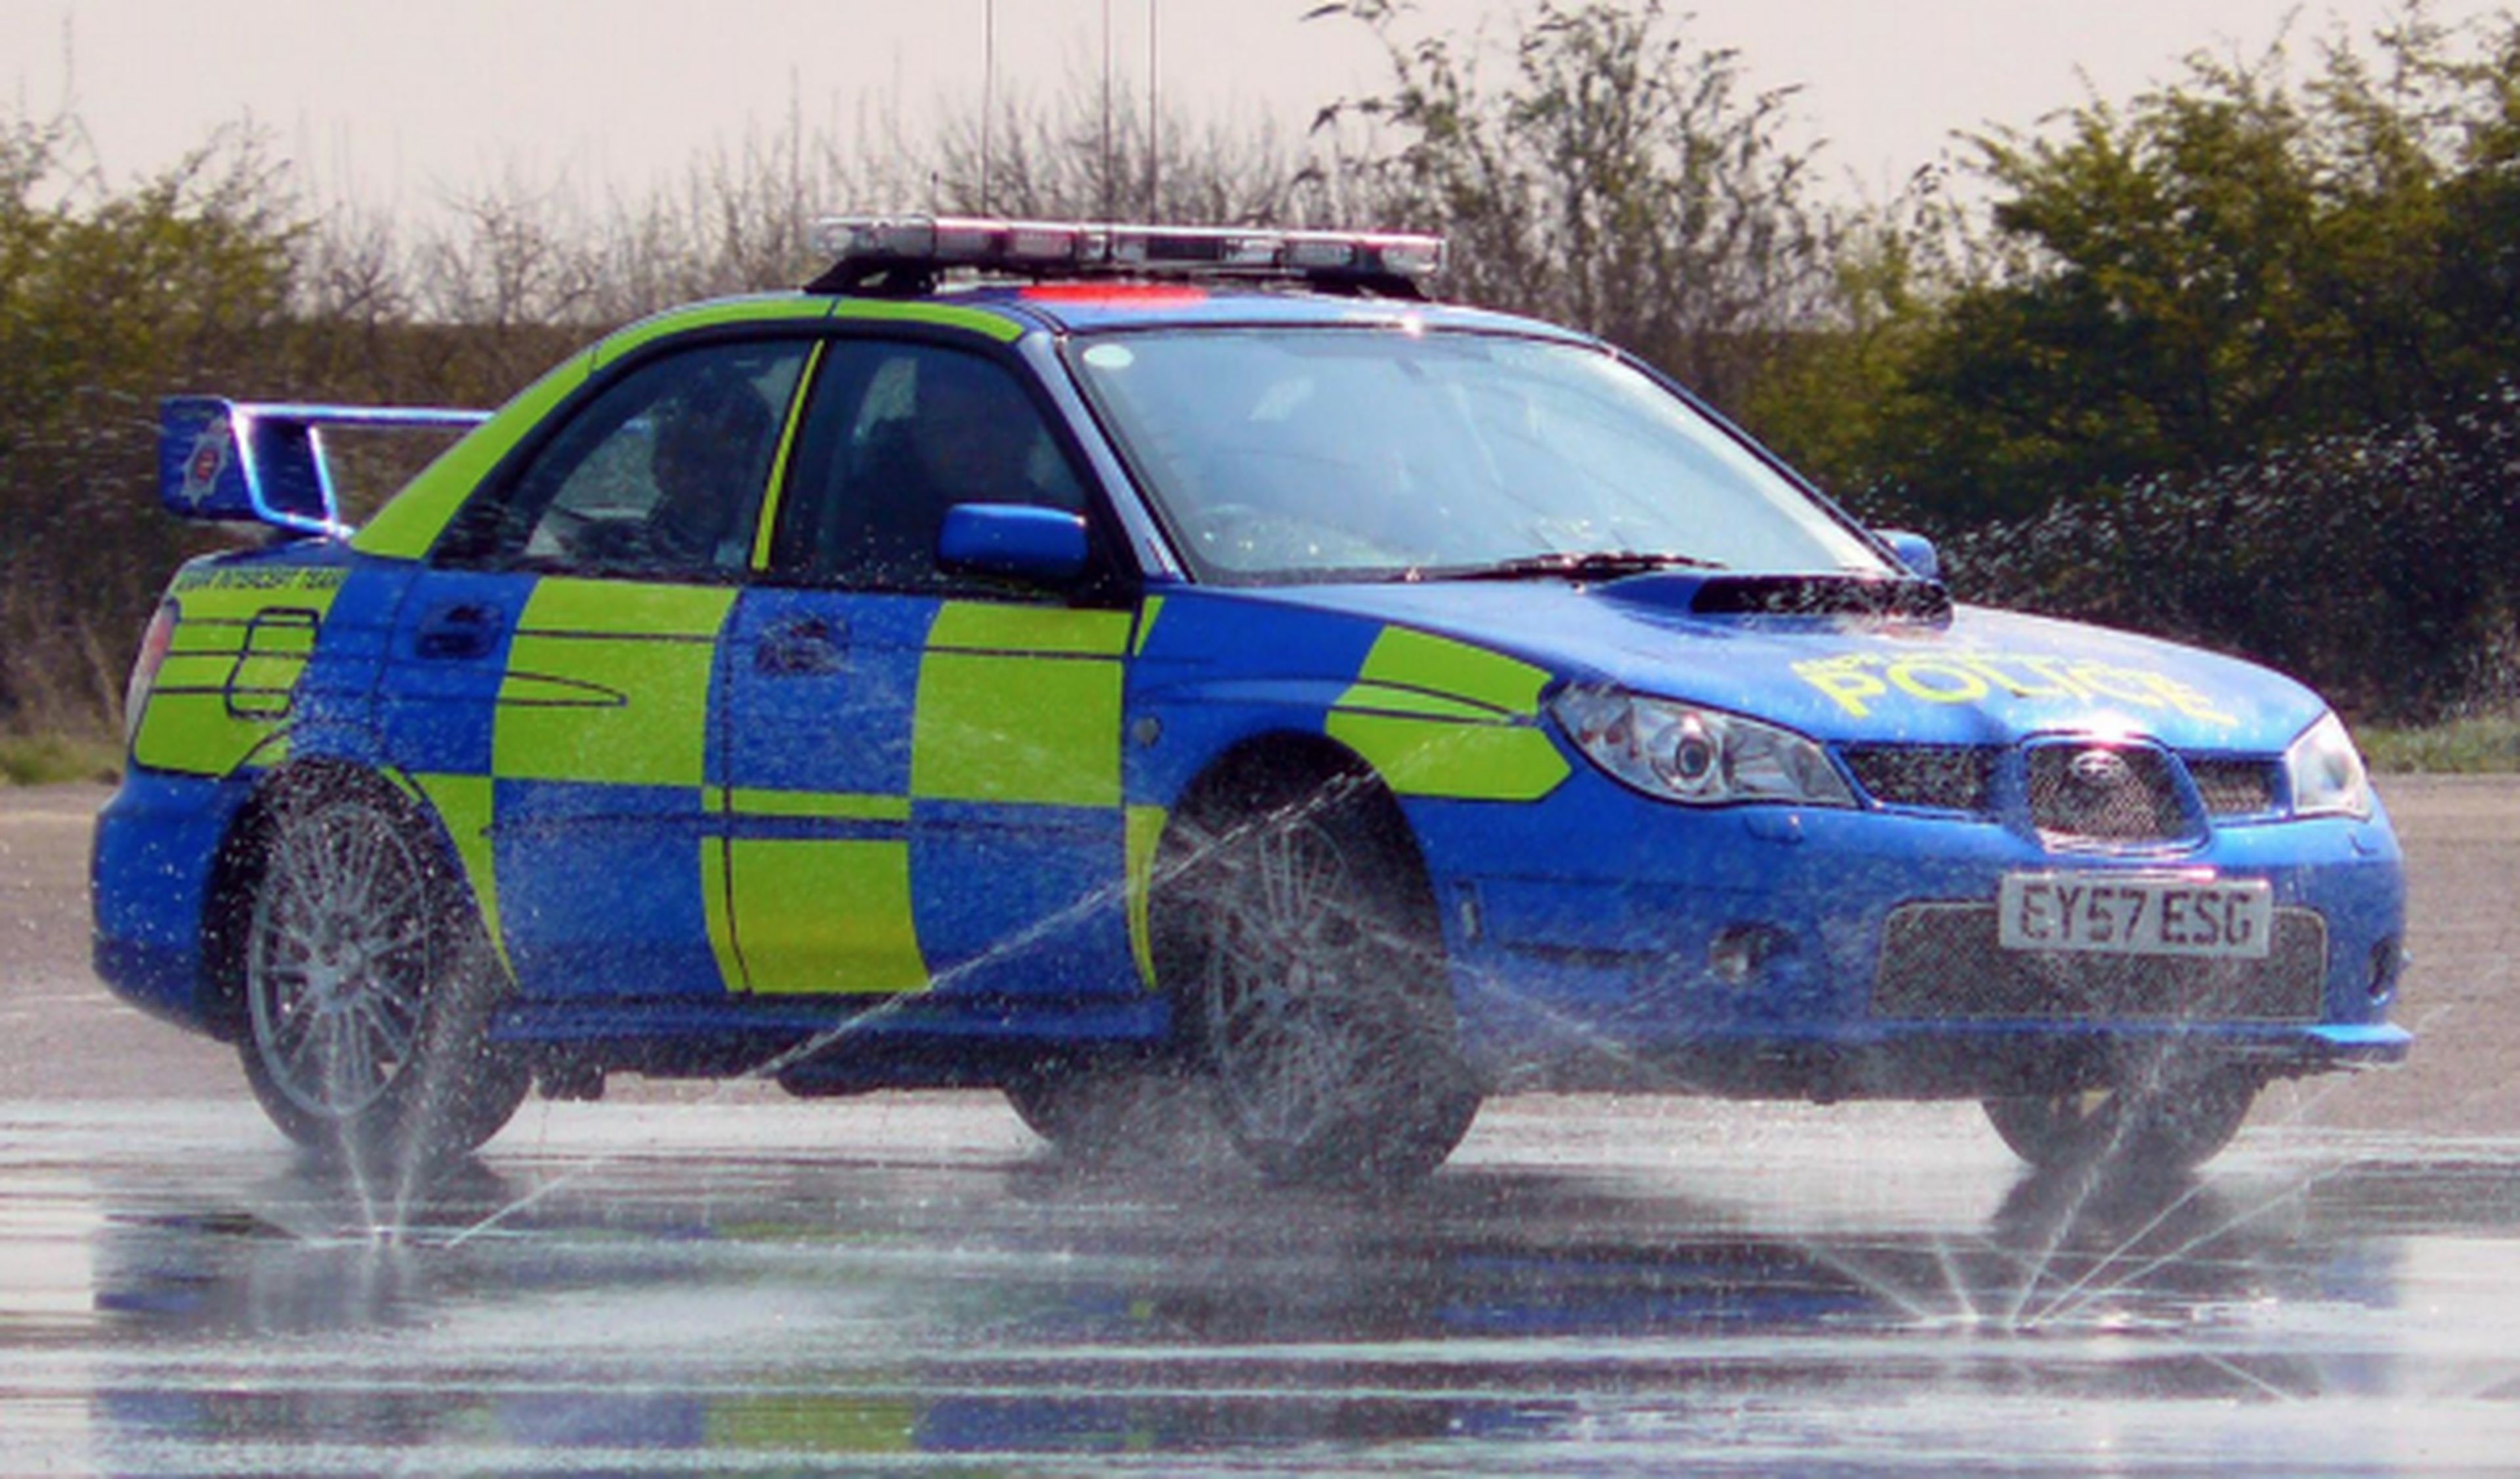 Los mejores coches de la Policía inglesa